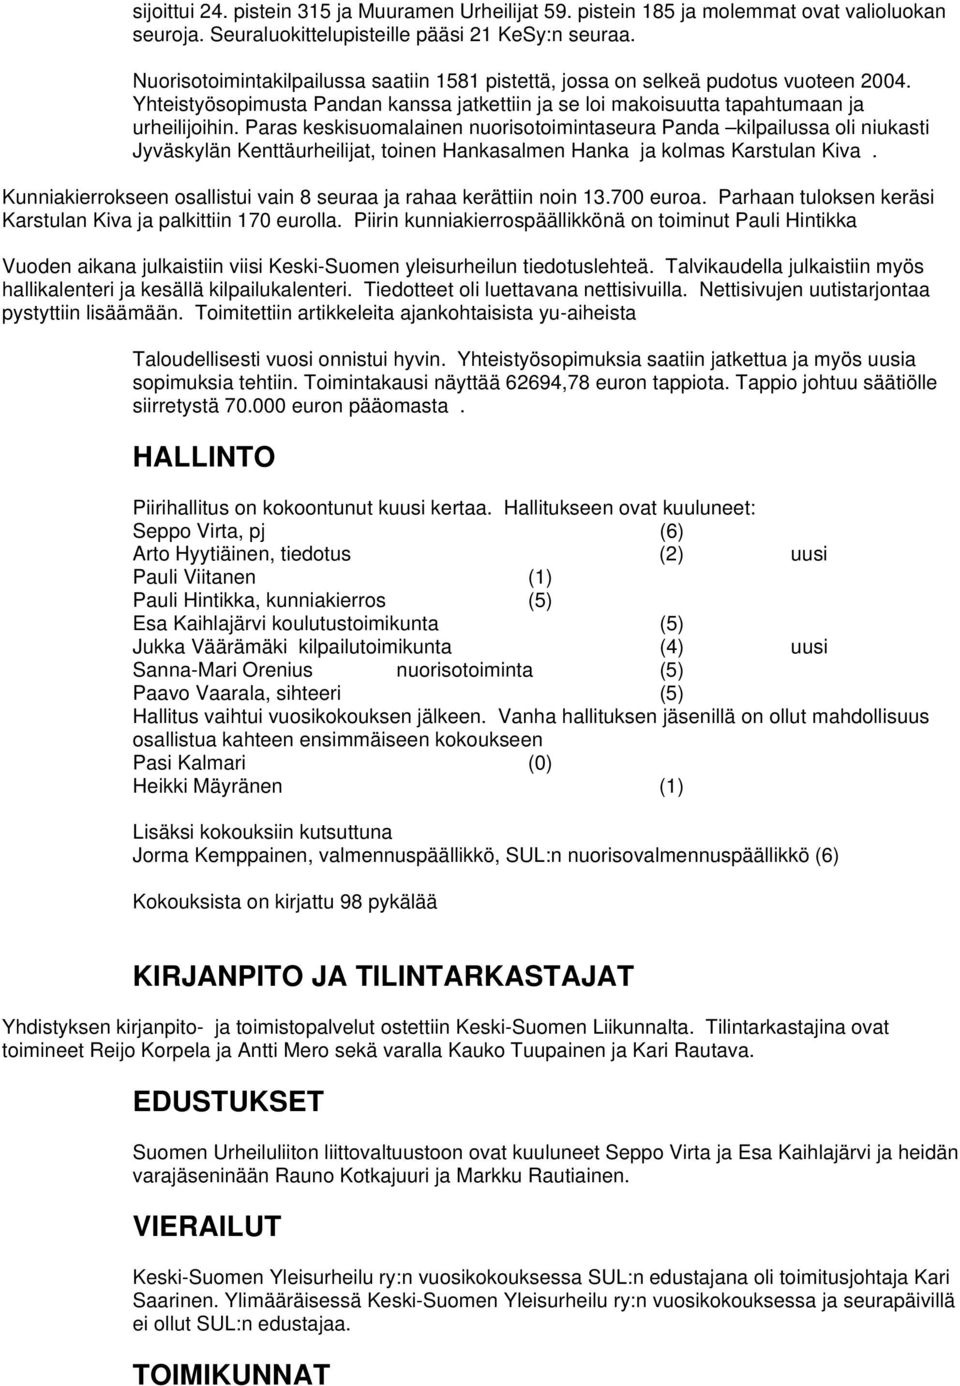 Paras keskisuomalainen nuorisotoimintaseura Panda kilpailussa oli niukasti Jyväskylän Kenttäurheilijat, toinen Hankasalmen Hanka ja kolmas Karstulan Kiva.